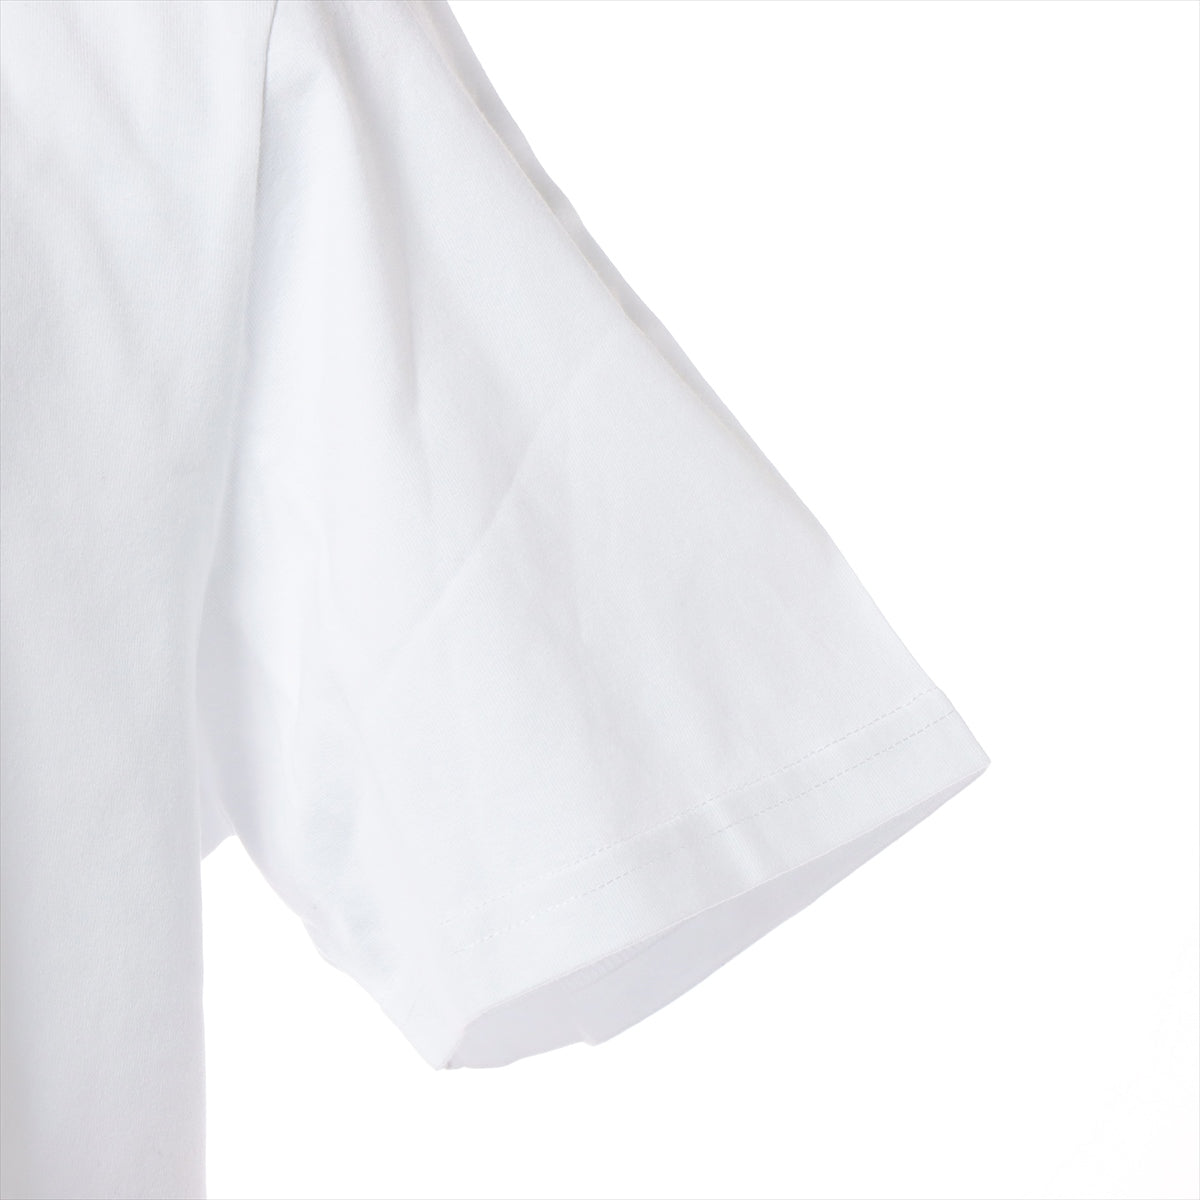 ディオール×ケニーシャーフ コットン Tシャツ XL メンズ ホワイト  193J697A0677